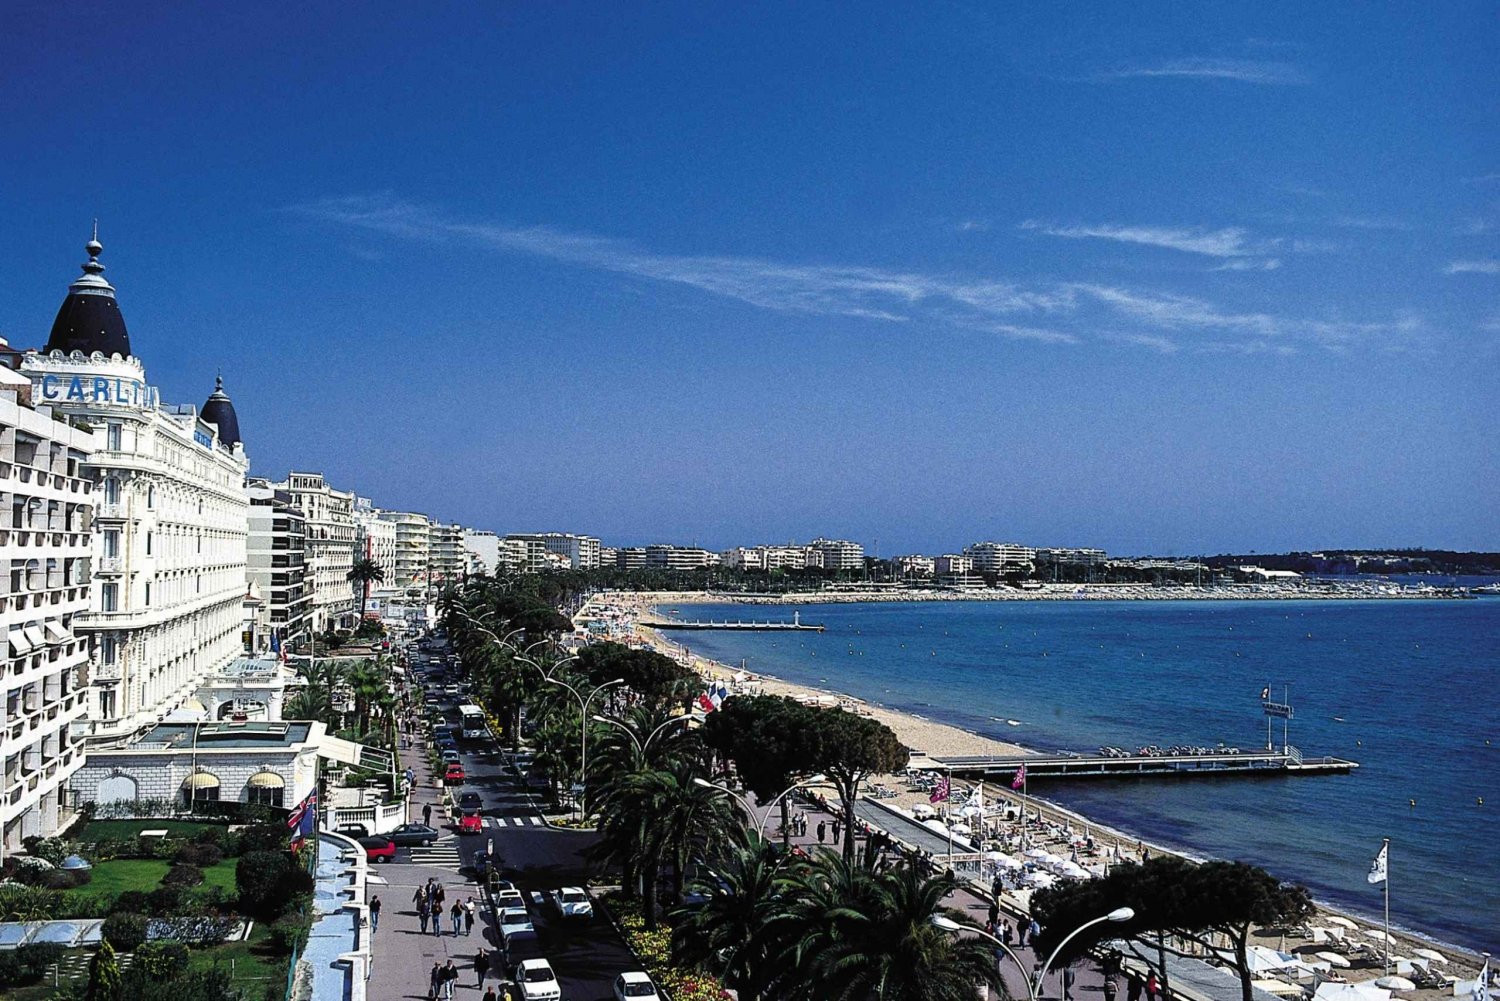 Z Nicei/Monako: wycieczka po Cannes, Antibes i Saint-Paul-de-Vence